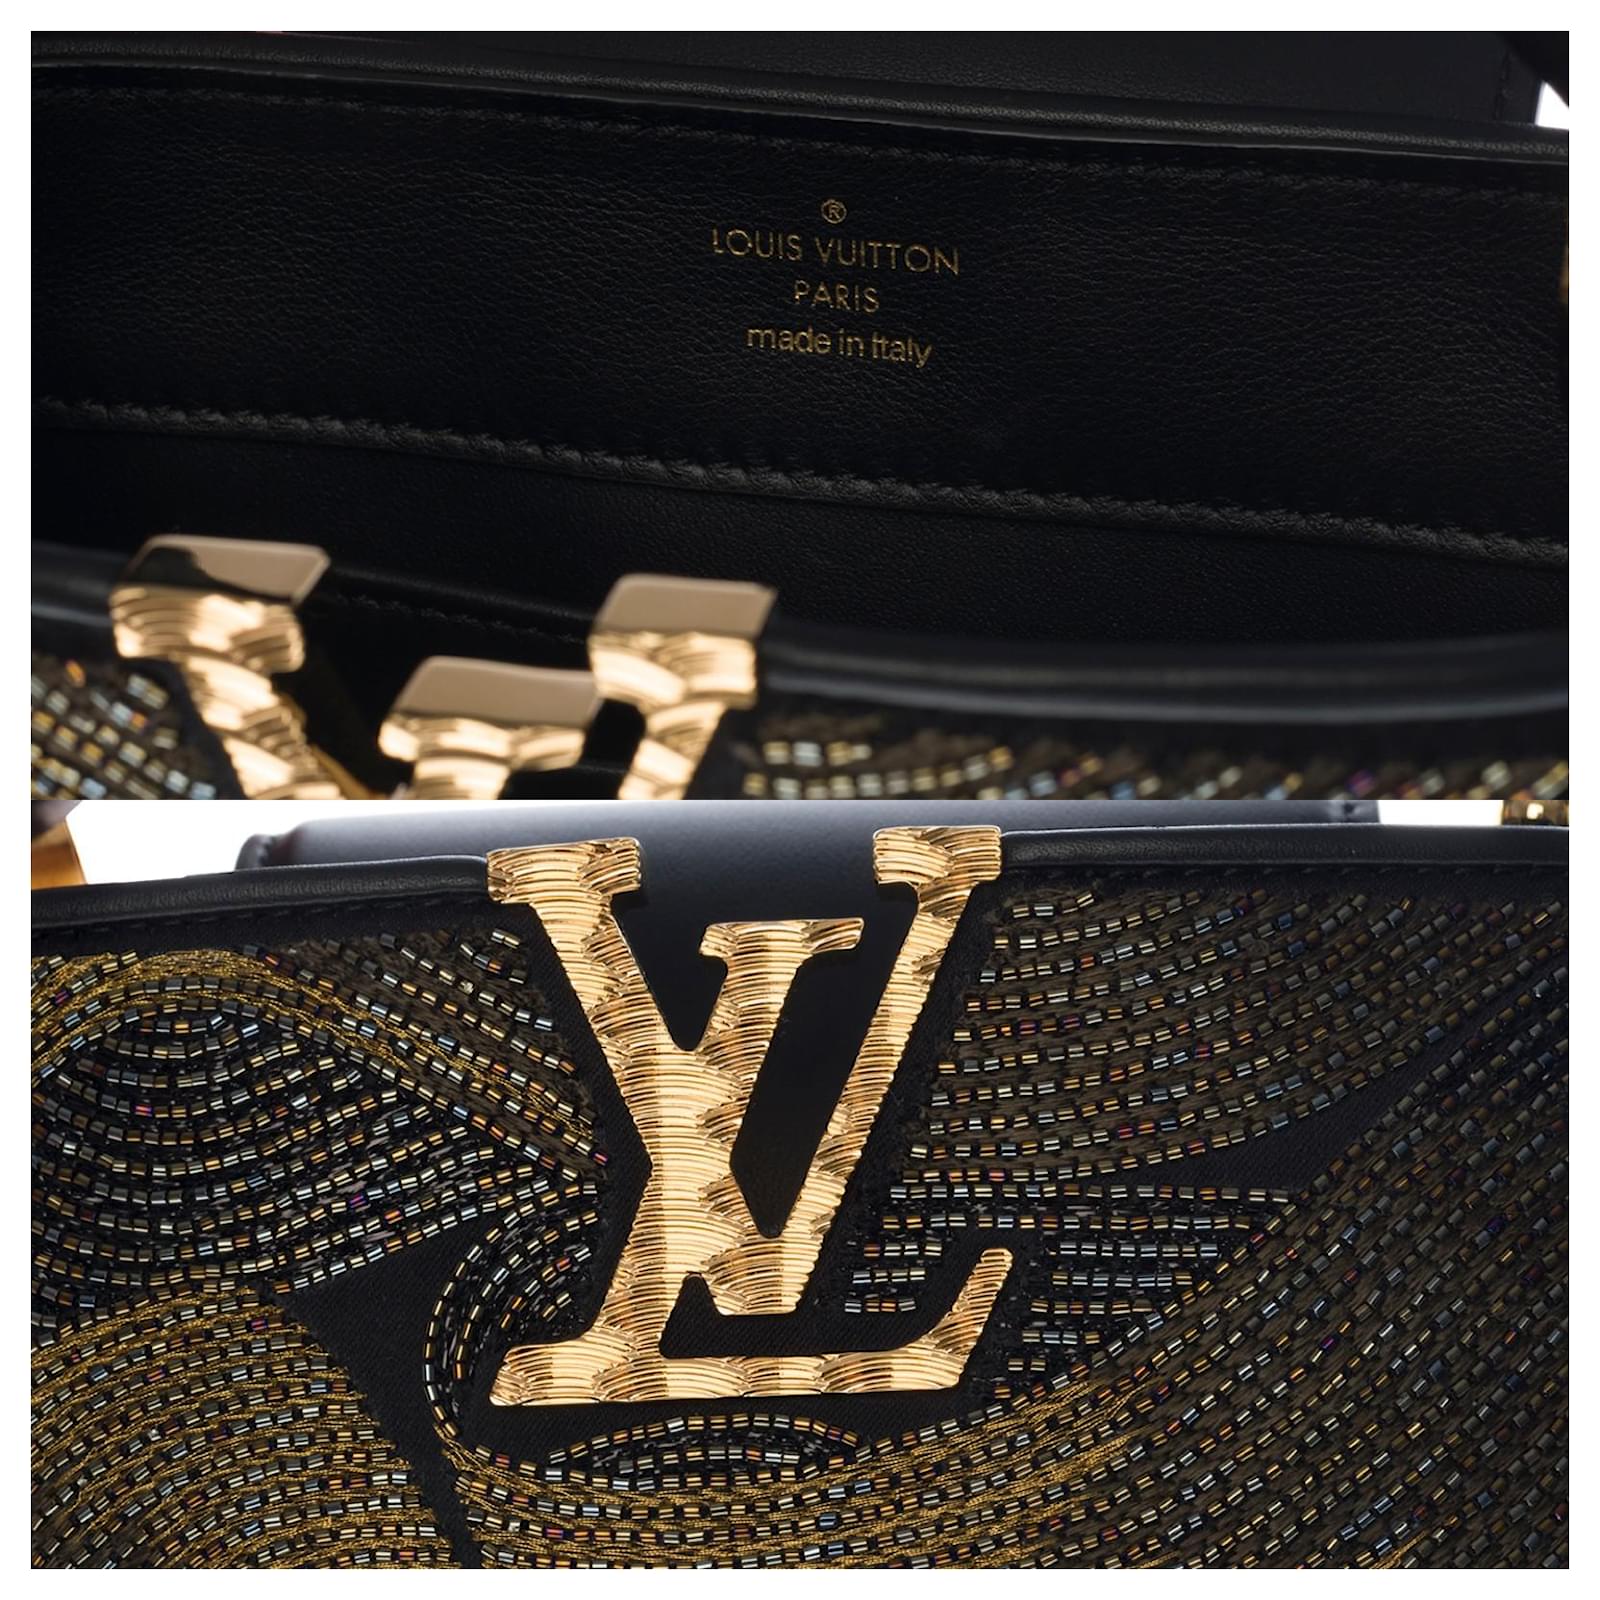 New - Ultra exclusive - Louis Vuitton Capucines Mini Cruella